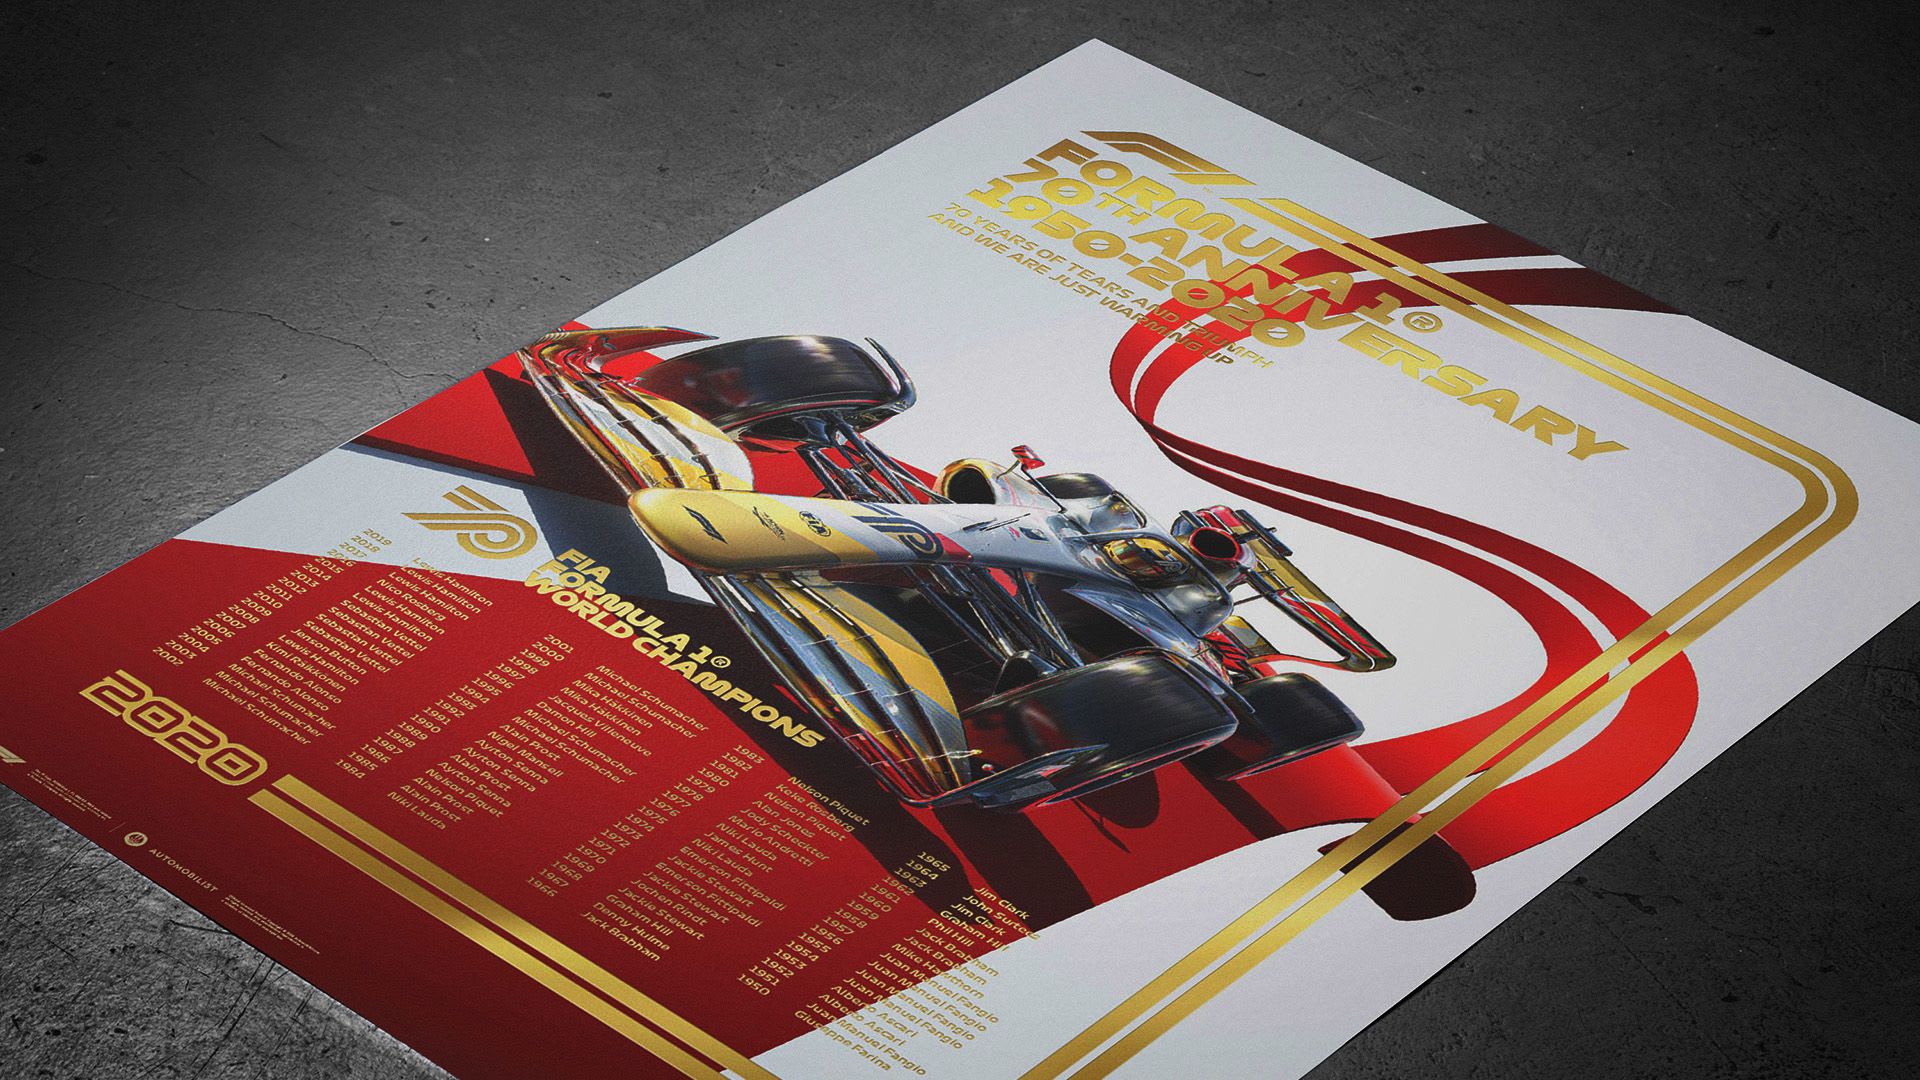 Commemorative posters celebrate F1's 70th anniversary